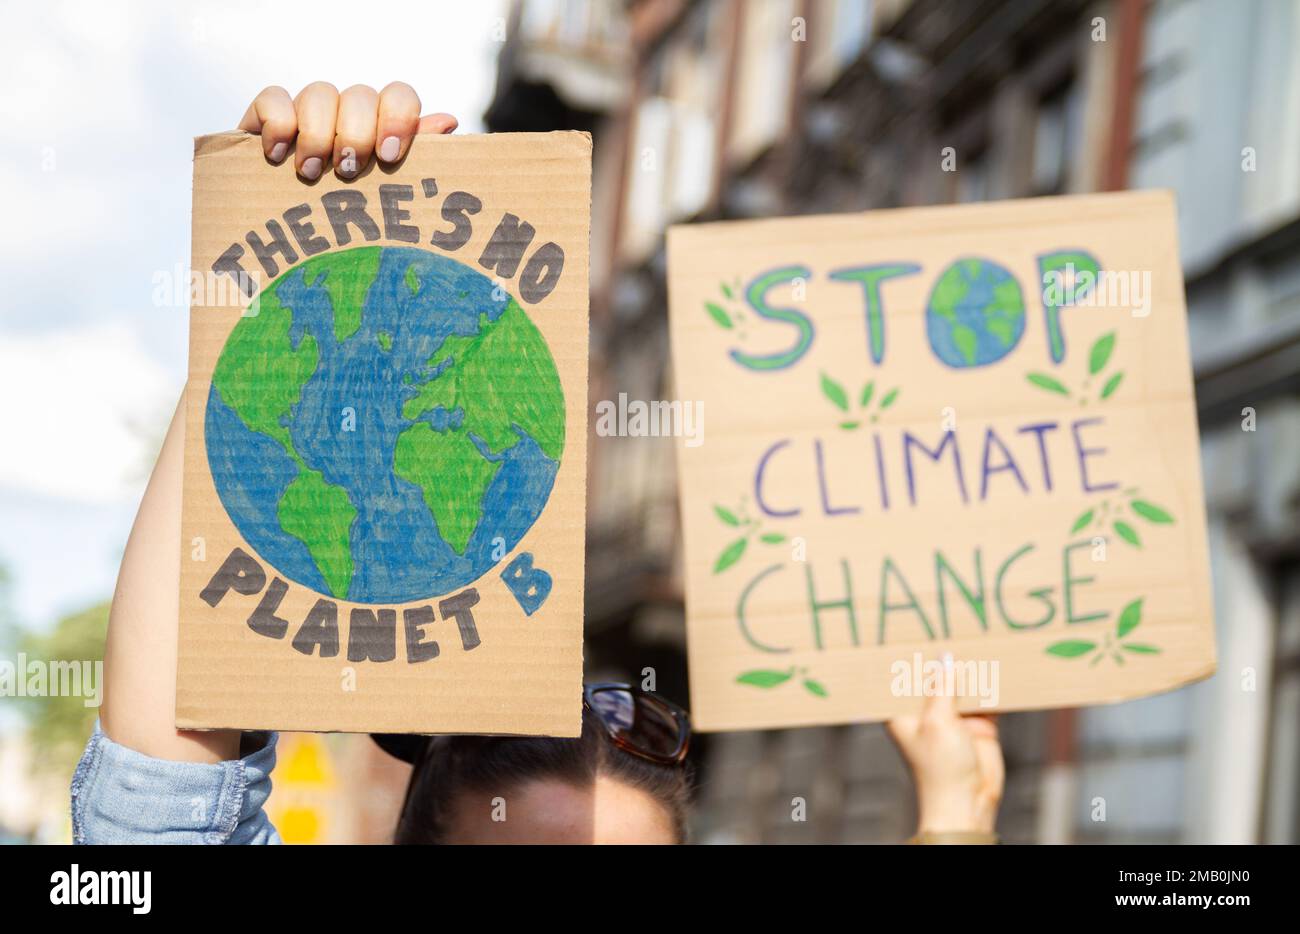 Manifestants tenant des panneaux il n'y a pas de planète B, Halte au changement climatique. Des gens avec des pancartes lors d'une manifestation de rassemblement de protestation, grève contre le réchauffement de la planète. Banque D'Images